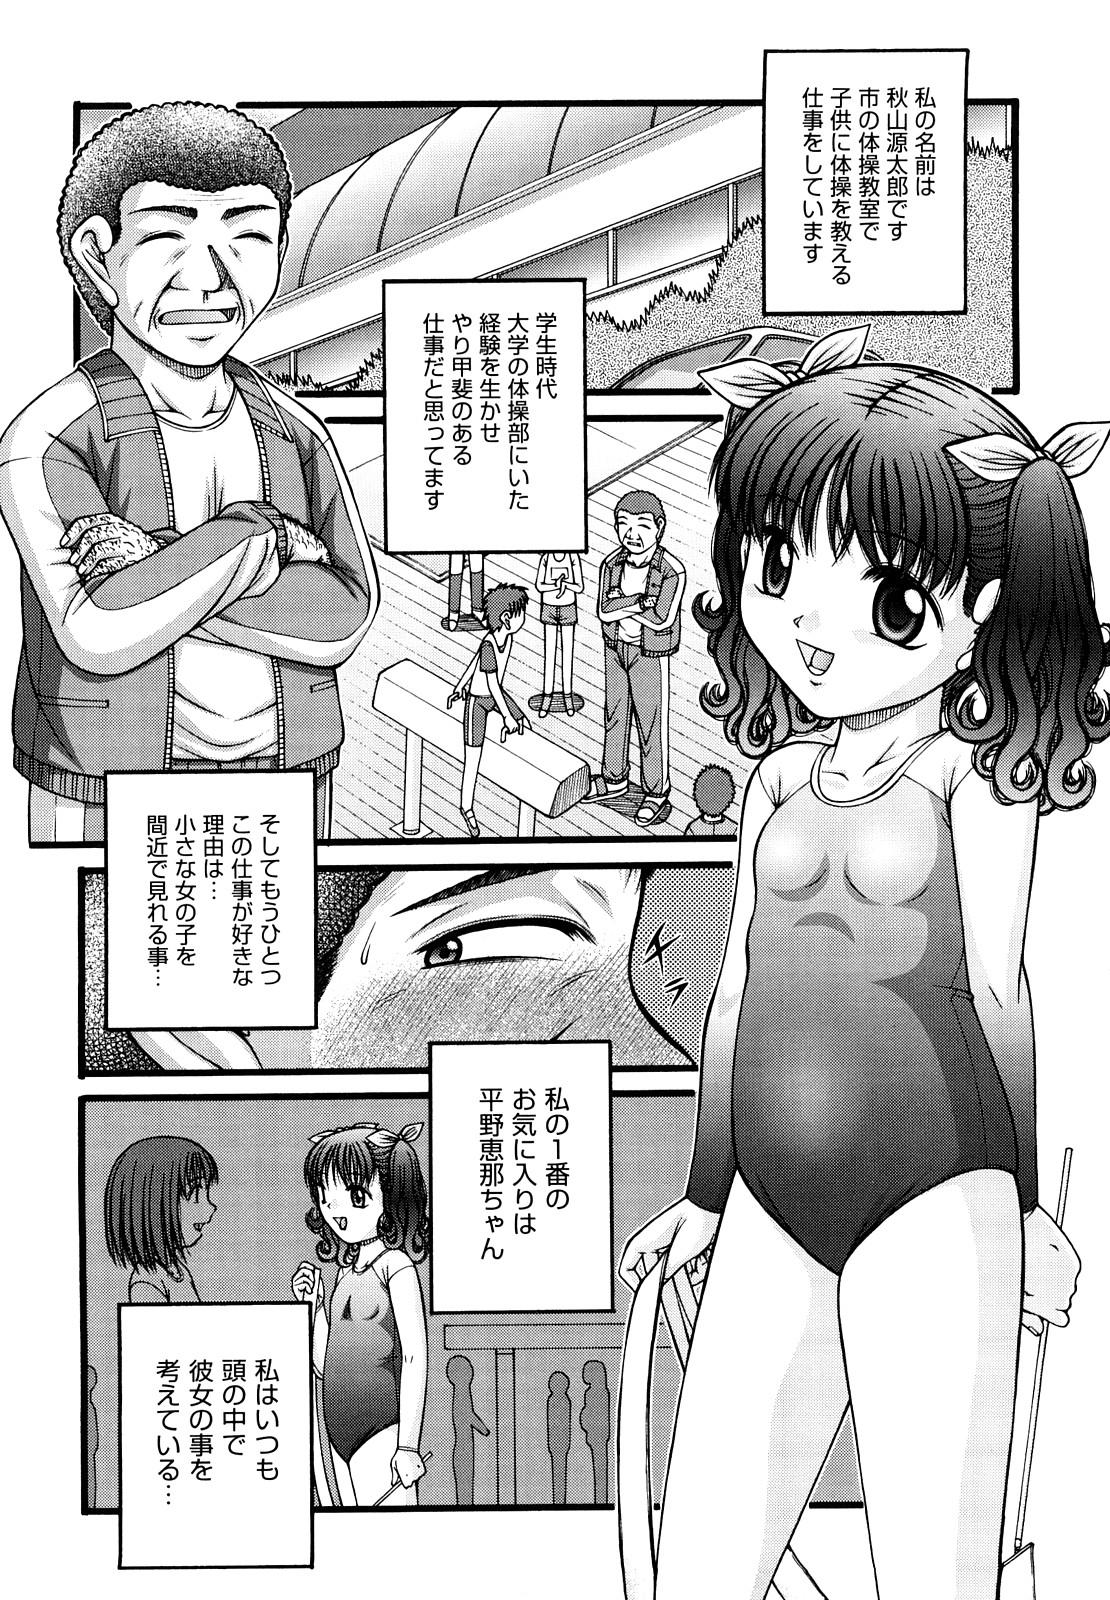 Shoujo Manga 8